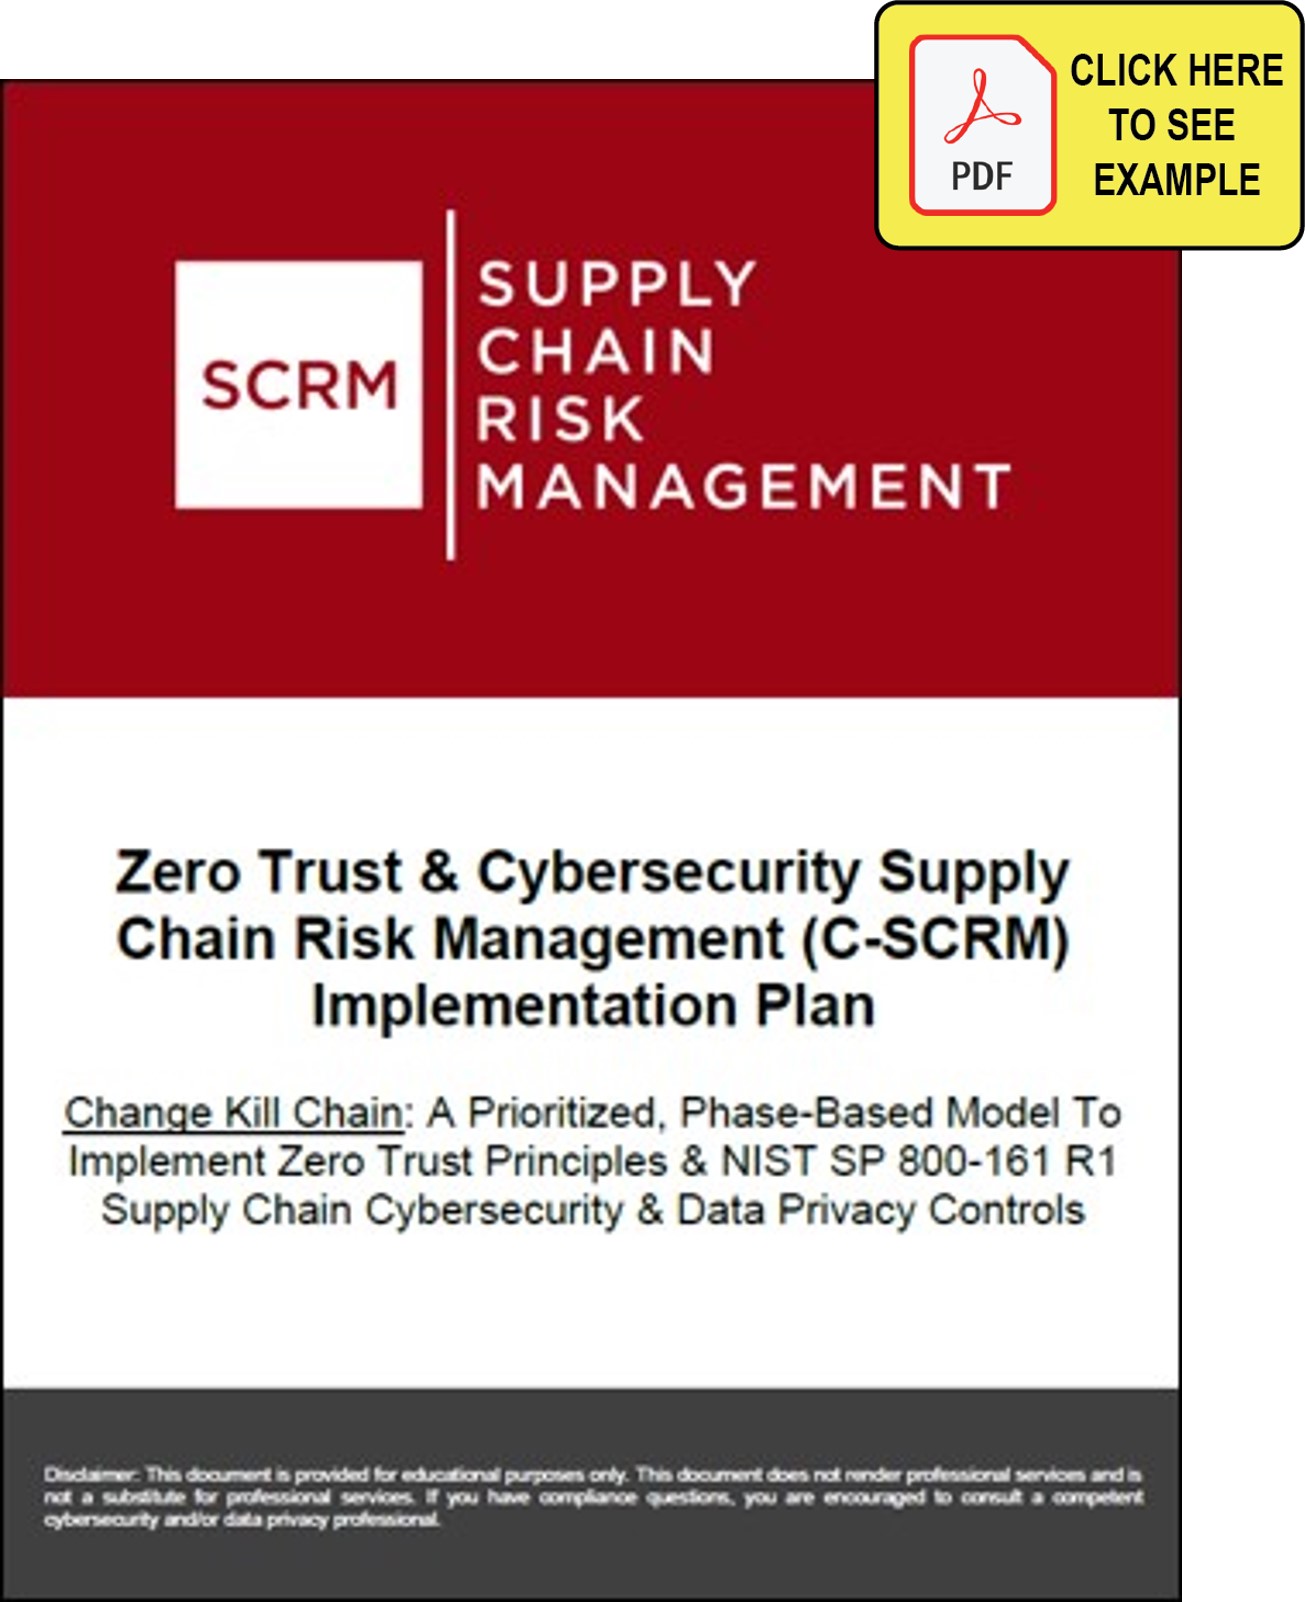 C-SCRM change kill chain